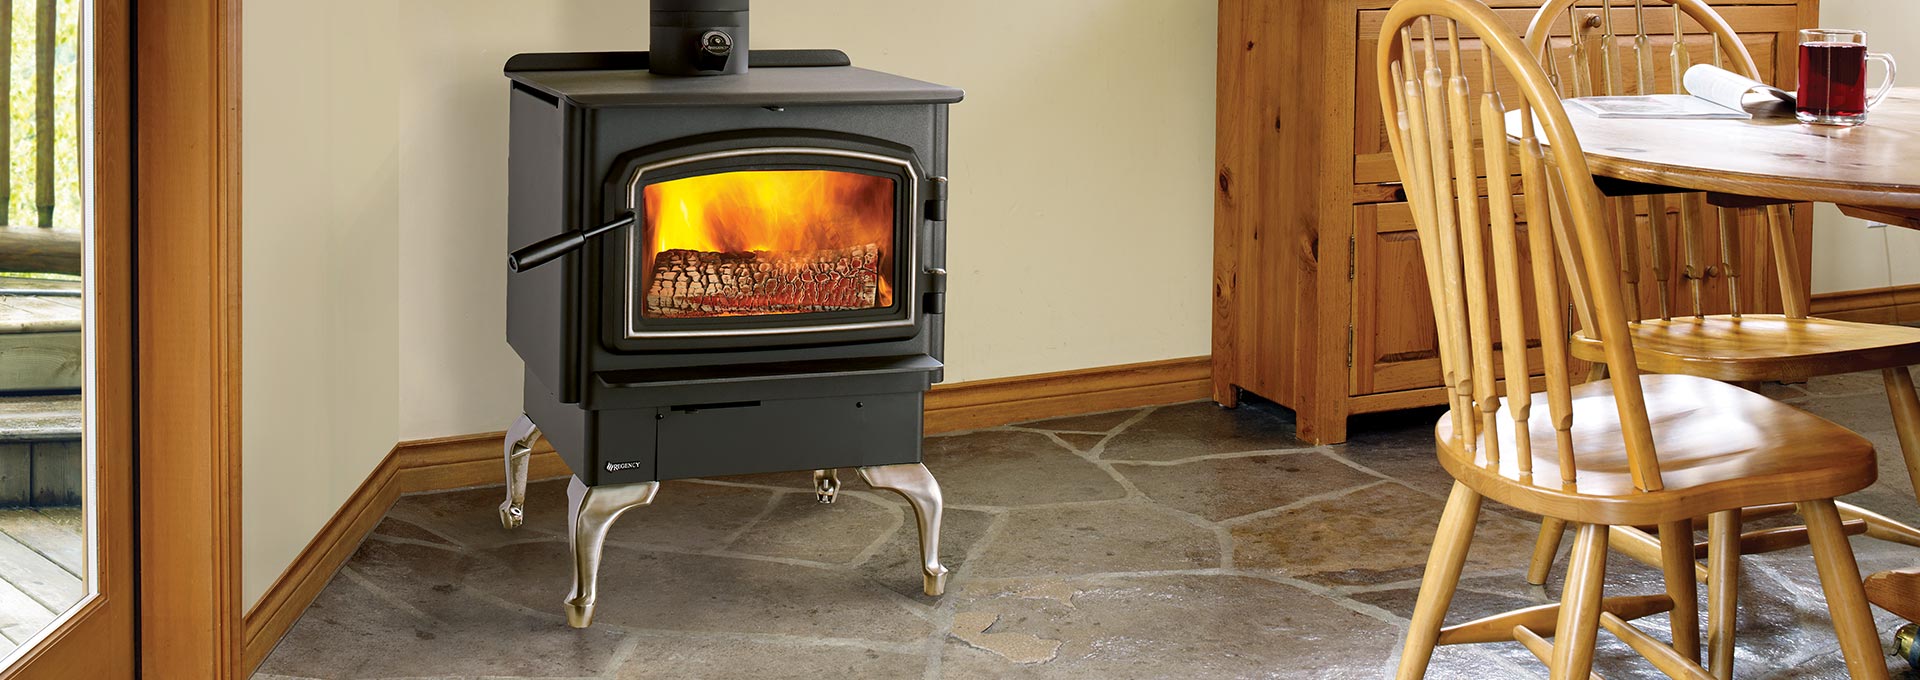 Double Sided Wood Burning Fireplace Inspirational Wood Stoves